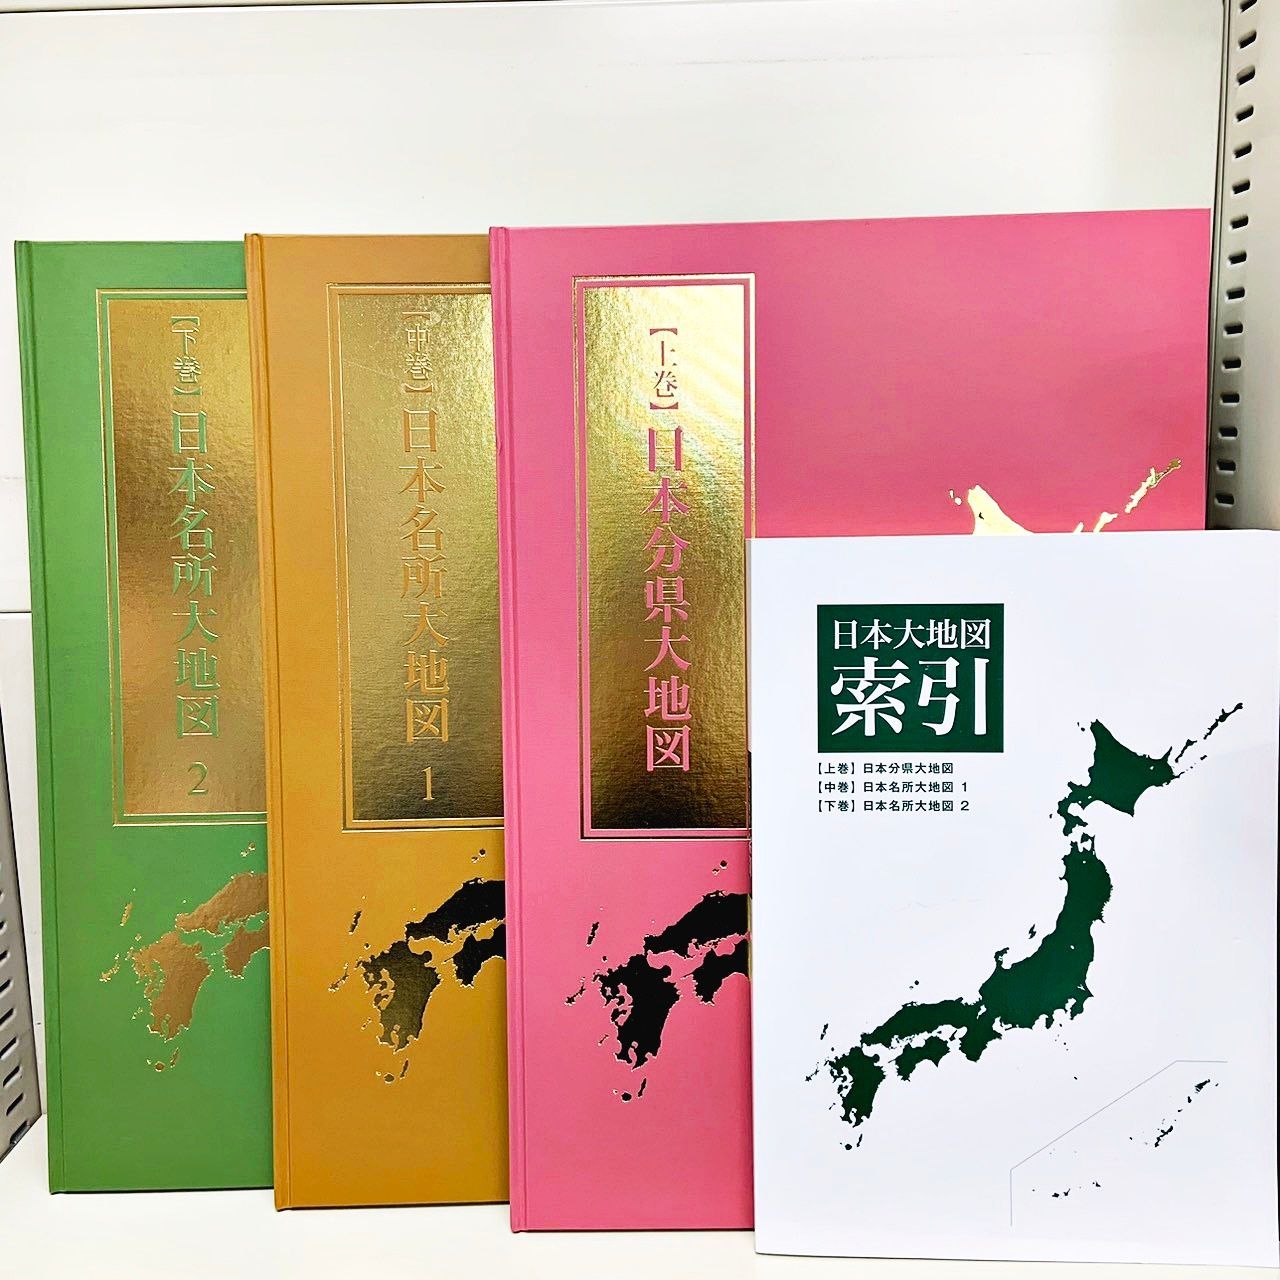 ユーキャン 日本大地図 上・中・下巻セット - 地図・旅行ガイド